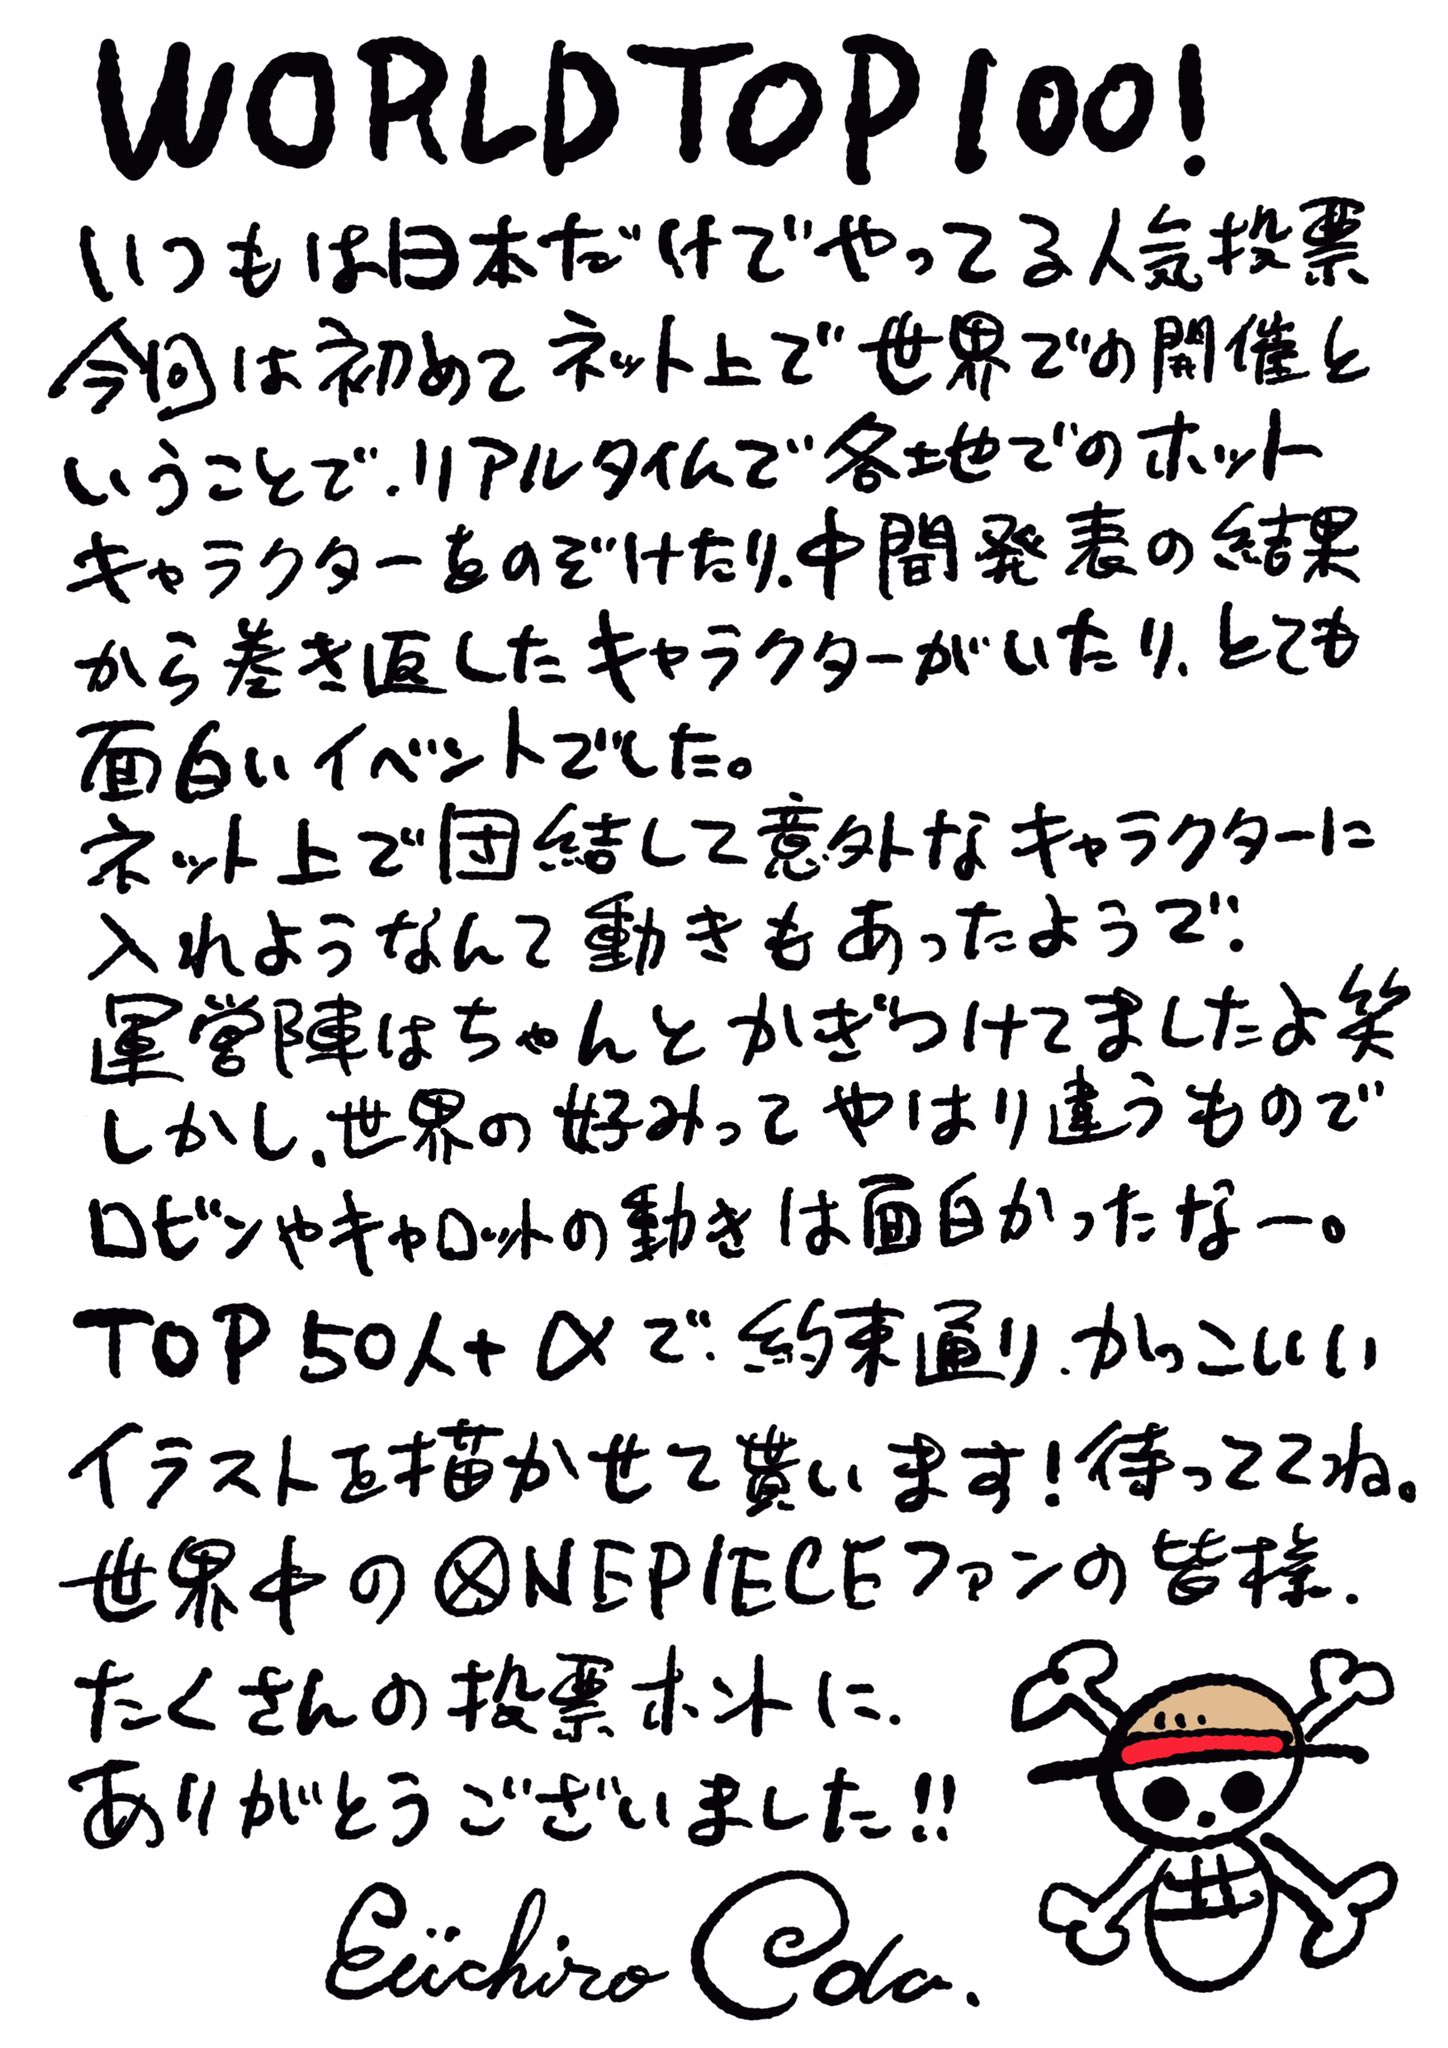 One Piece スタッフ 公式 Official 初のキャラクター世界人気投票どうでしたか 世界中の熱を感じた10万票 本当にありがとうございました 尾田さんは上位50体 Aを新たに描き下ろします コメントを改めて公開 続報はジャンプ本誌にて アーカイブ